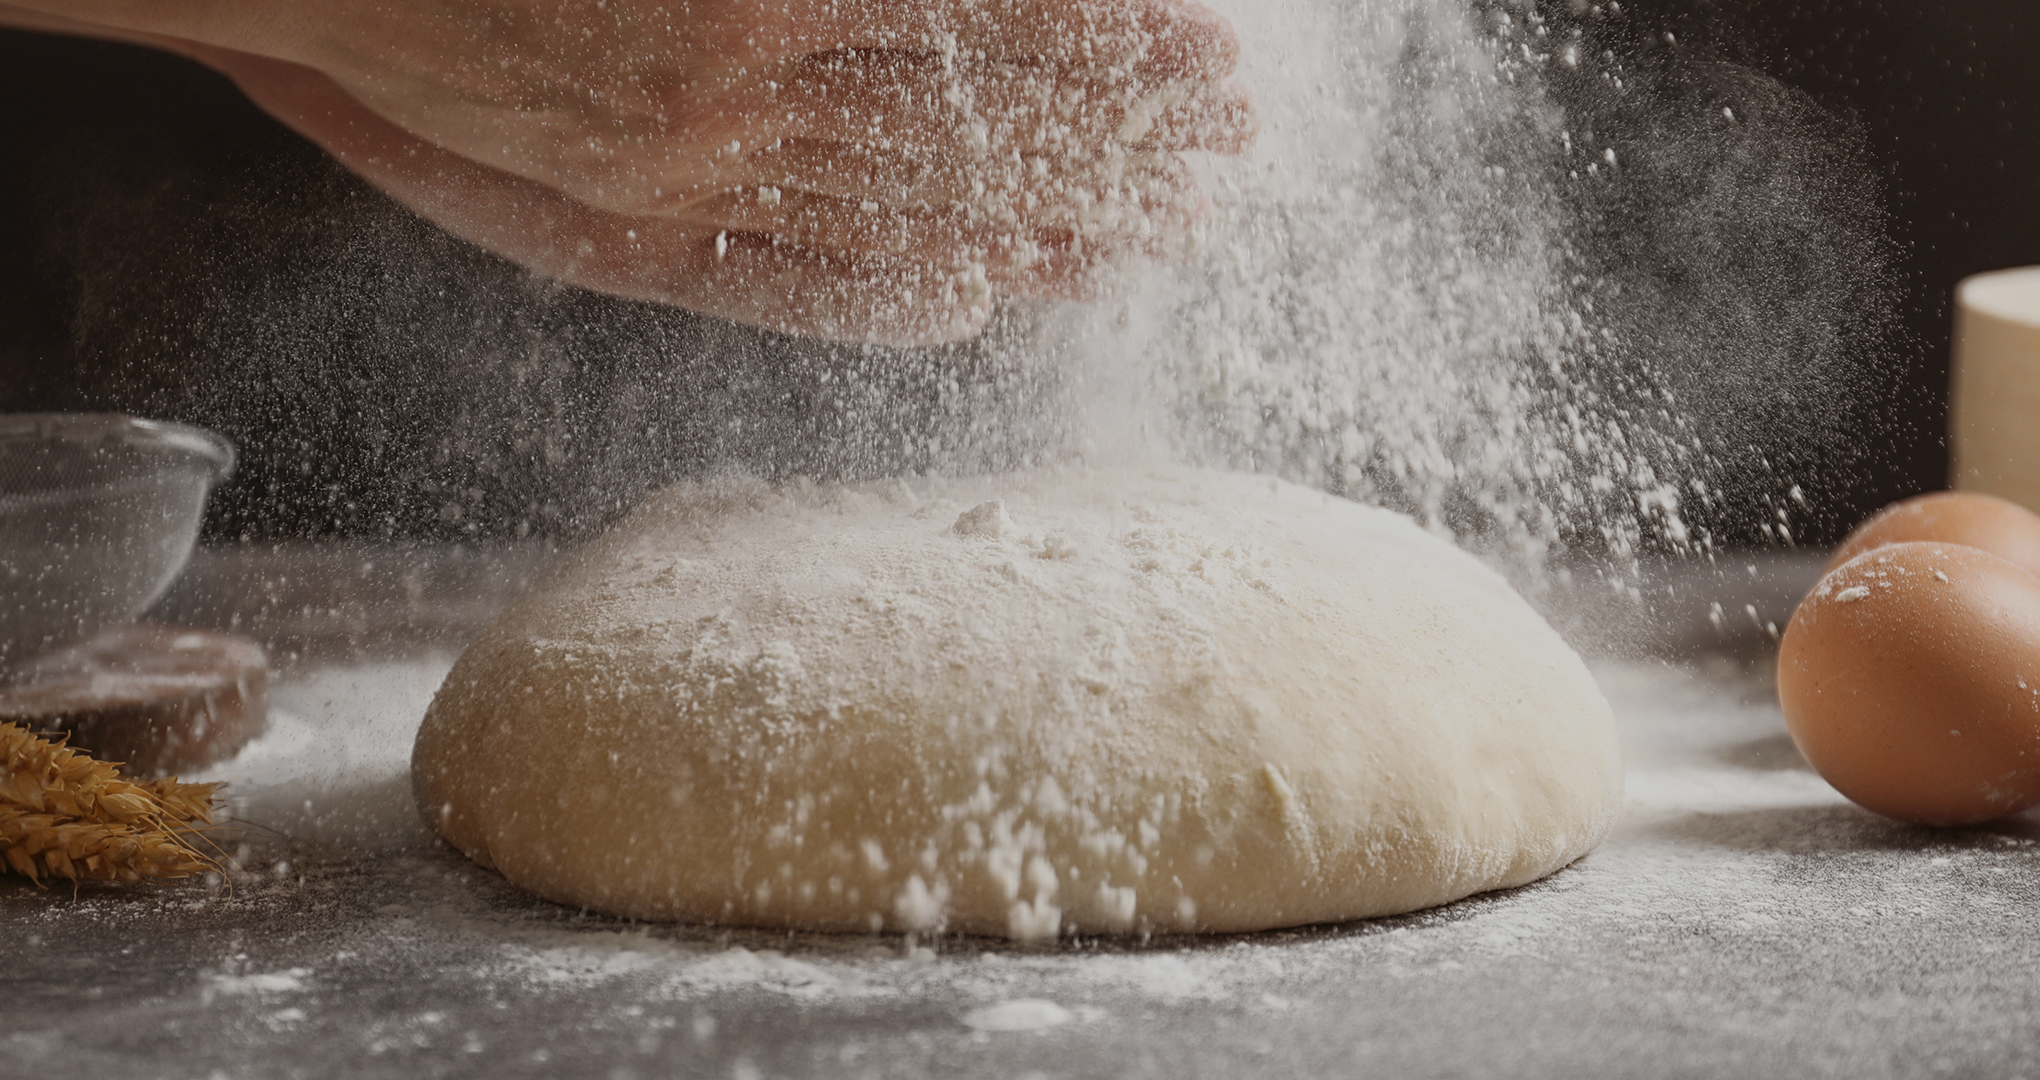 Des mains qui saupoudre de la farine sur une boule de pâte à pain.